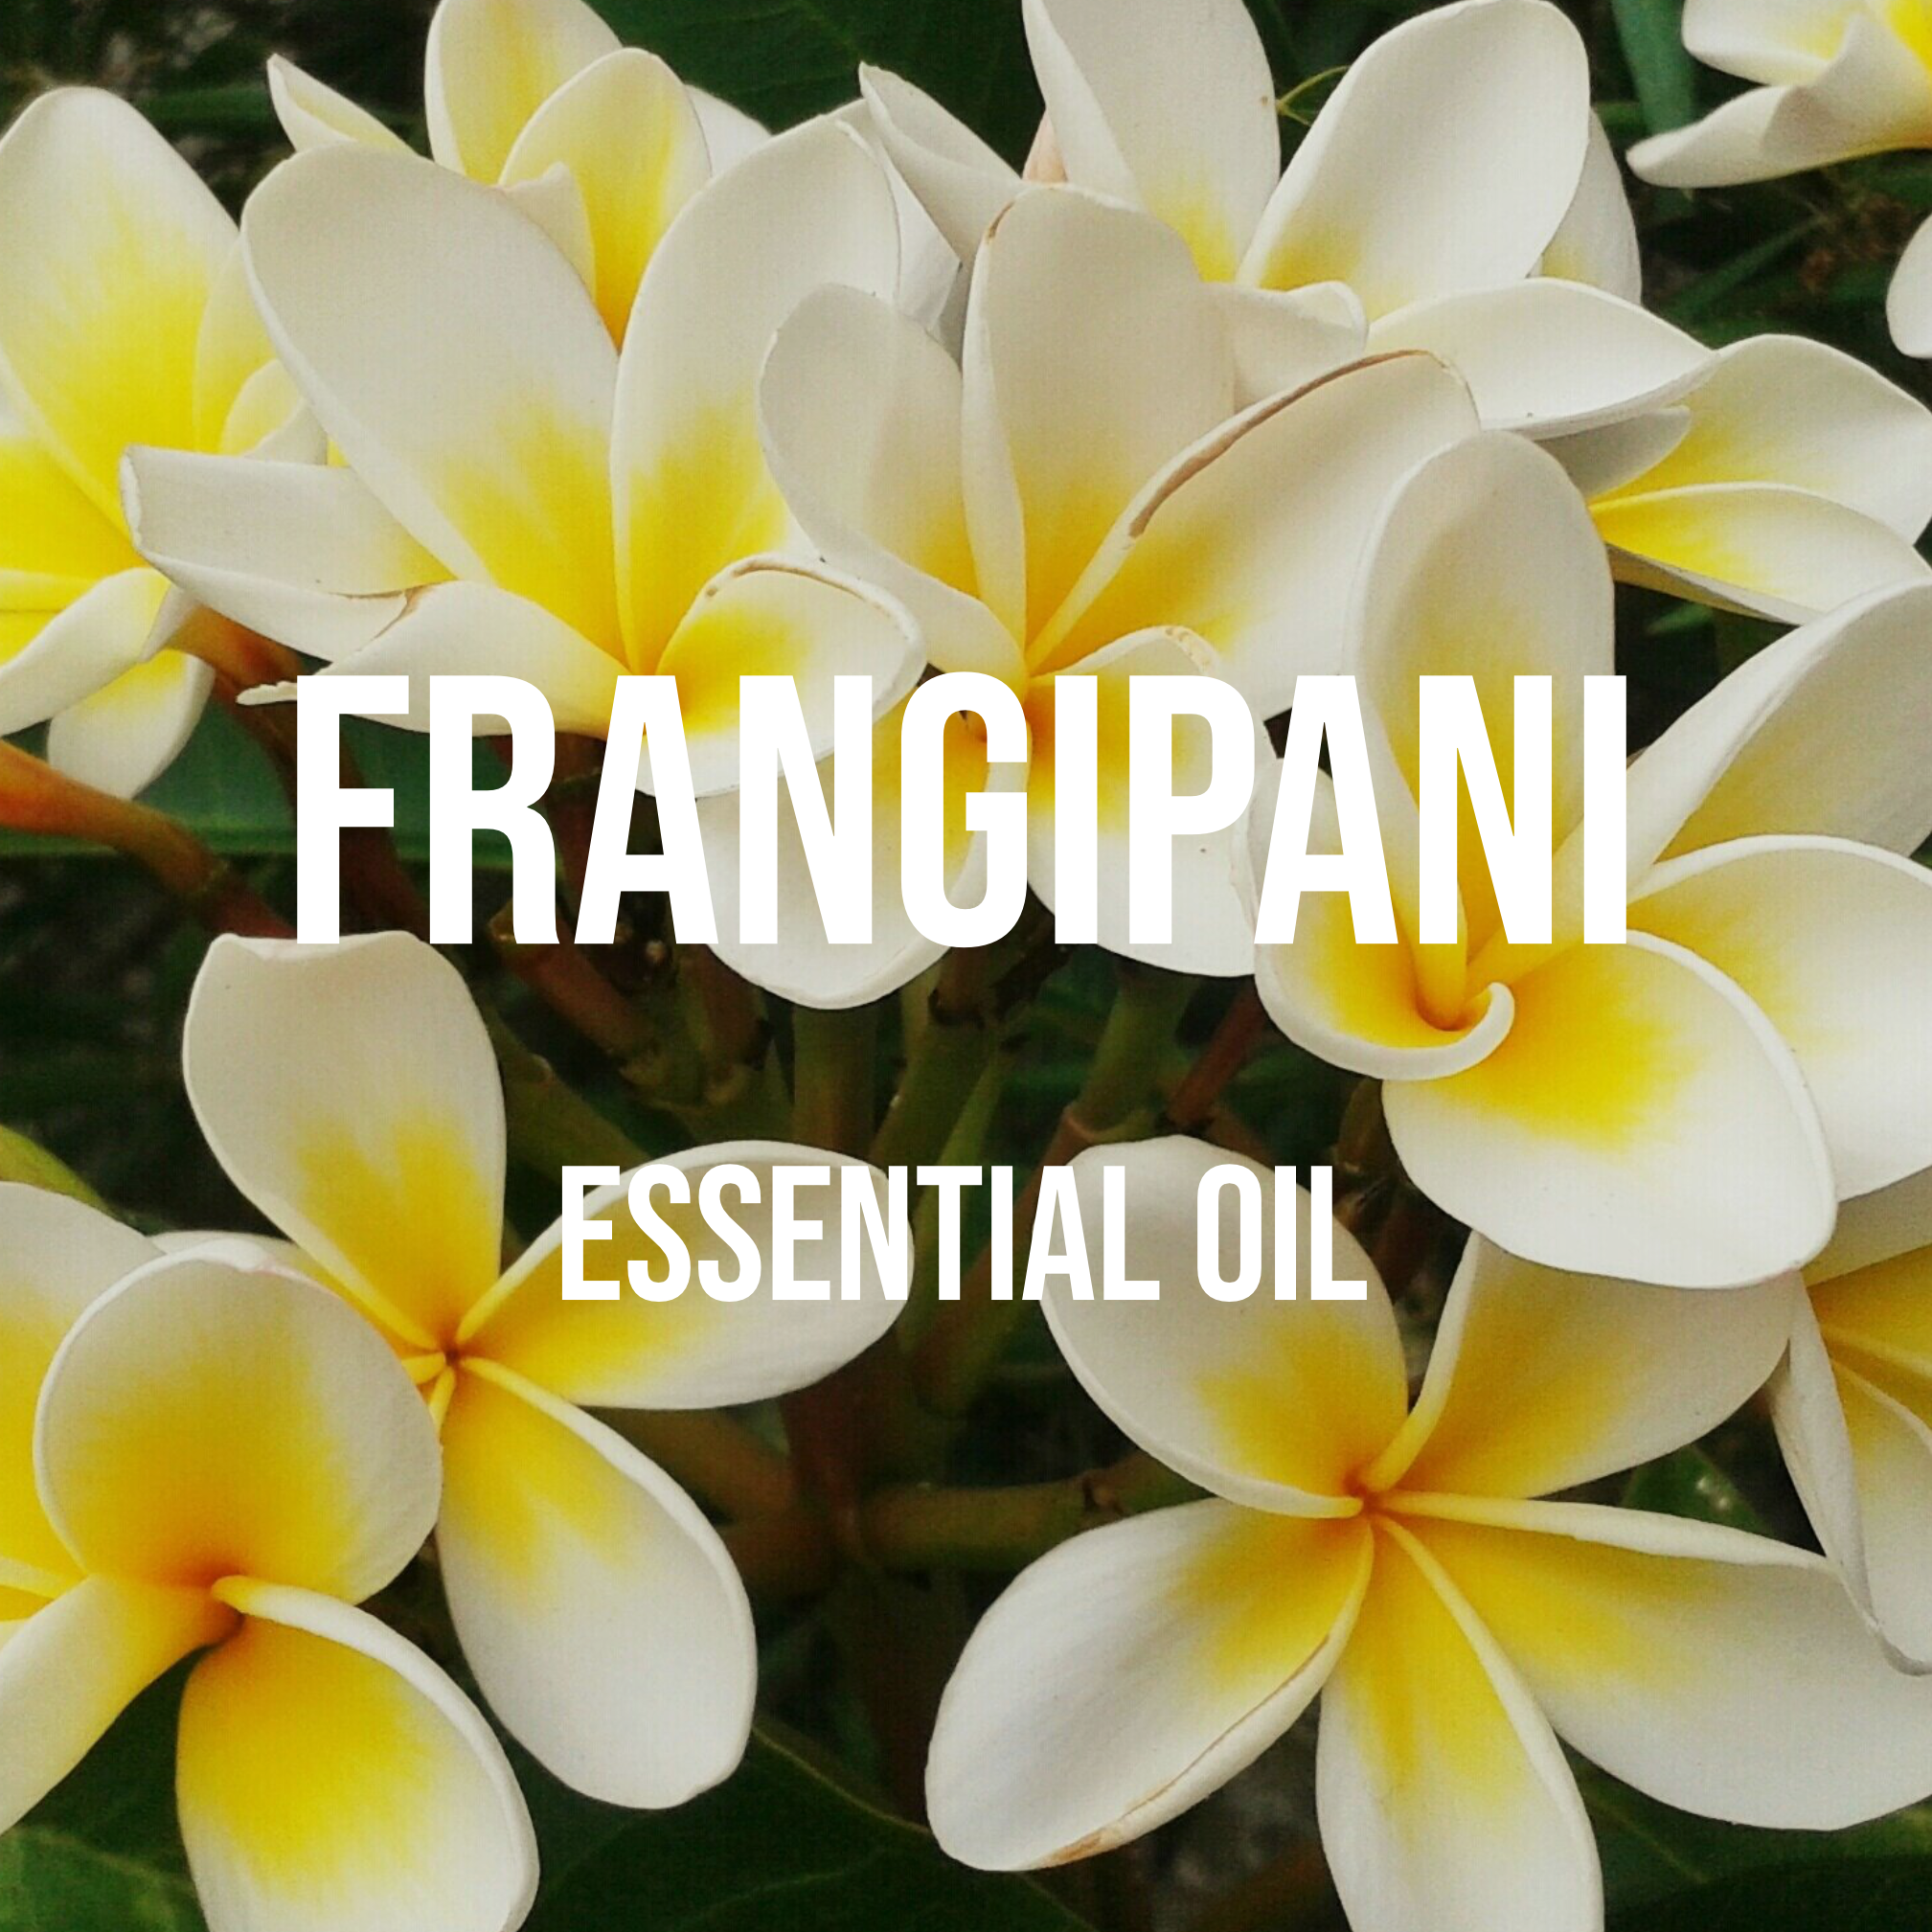 Frangipani (Plumeria) 100% Pure, Perfect Essential Oil from Bali, 10 ml